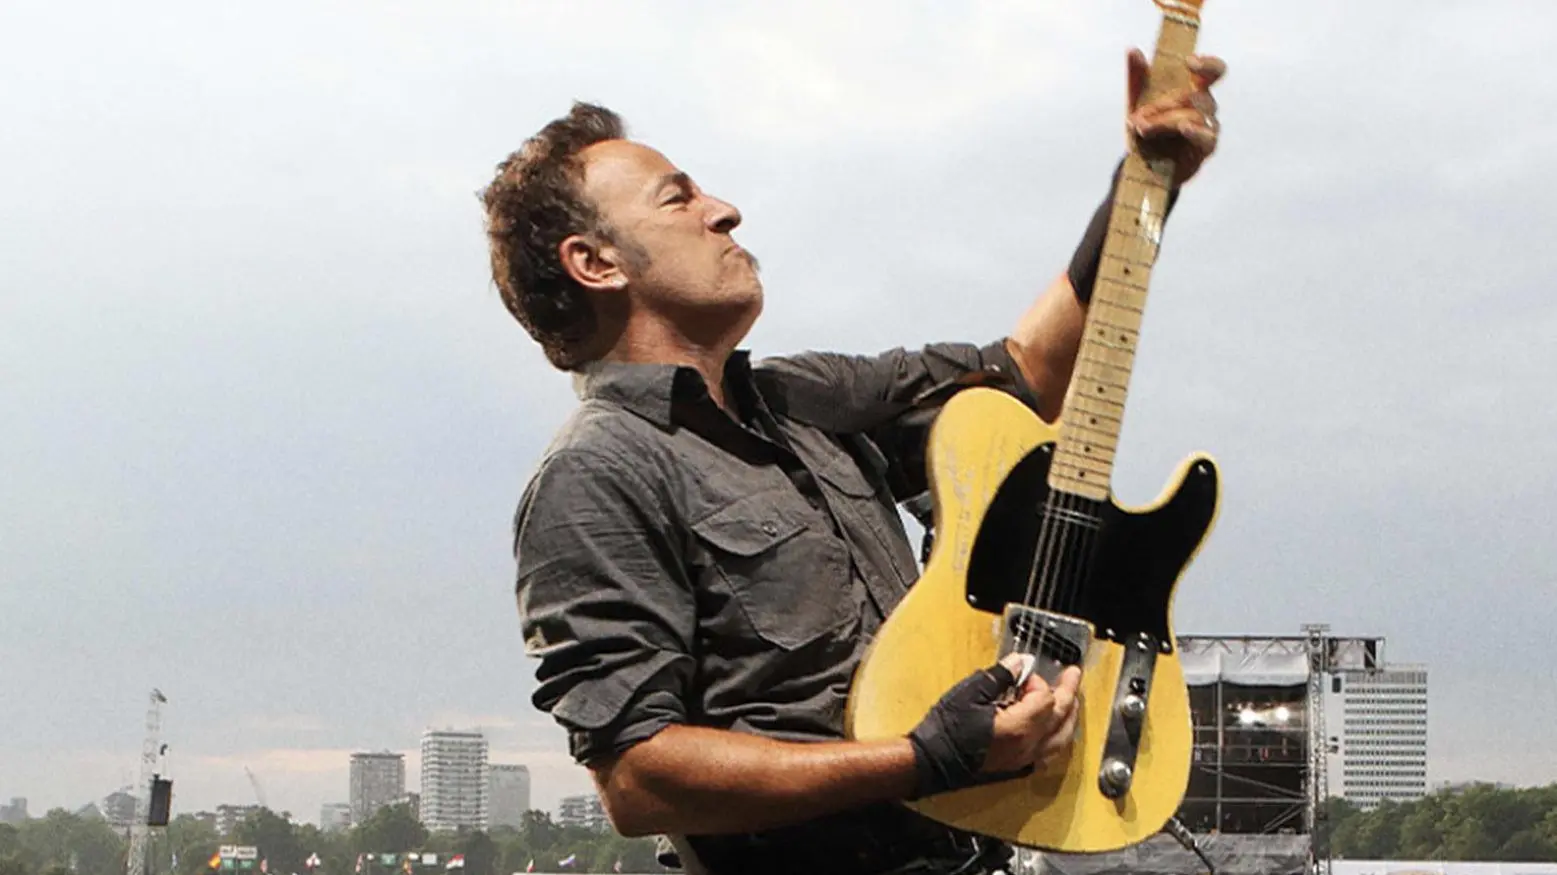 La notte di Springsteen  Primi allestimenti al parco  Foto aeree per lo show